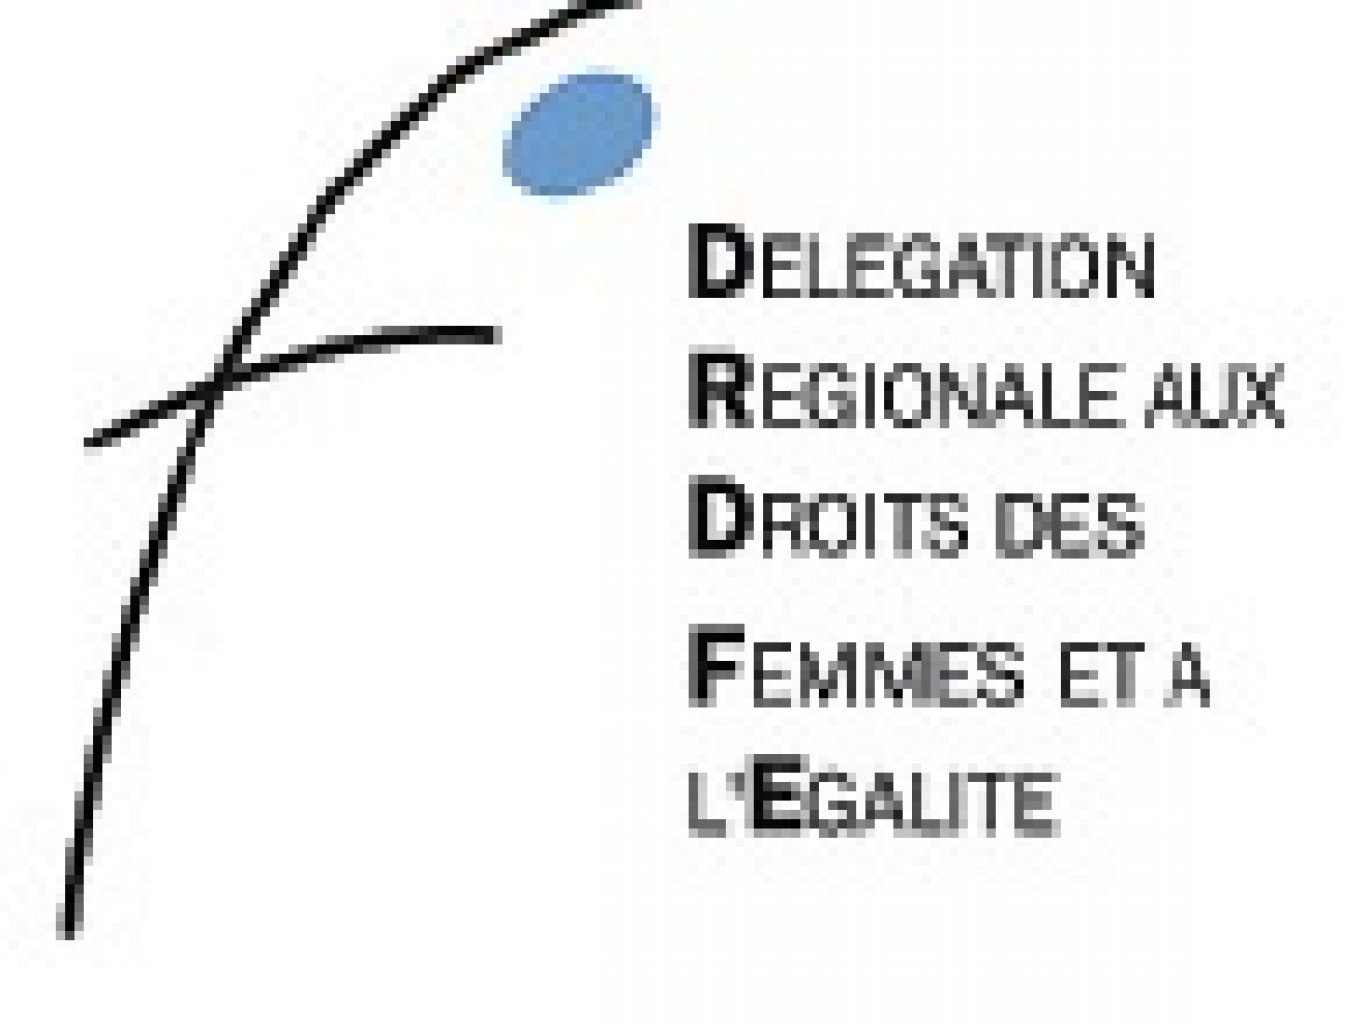 Les délégations régionales aux droits des femmes et à l’égalité visent à favoriser l’égalité entre hommes et femmes dans la vie économique, politique, et sociale.